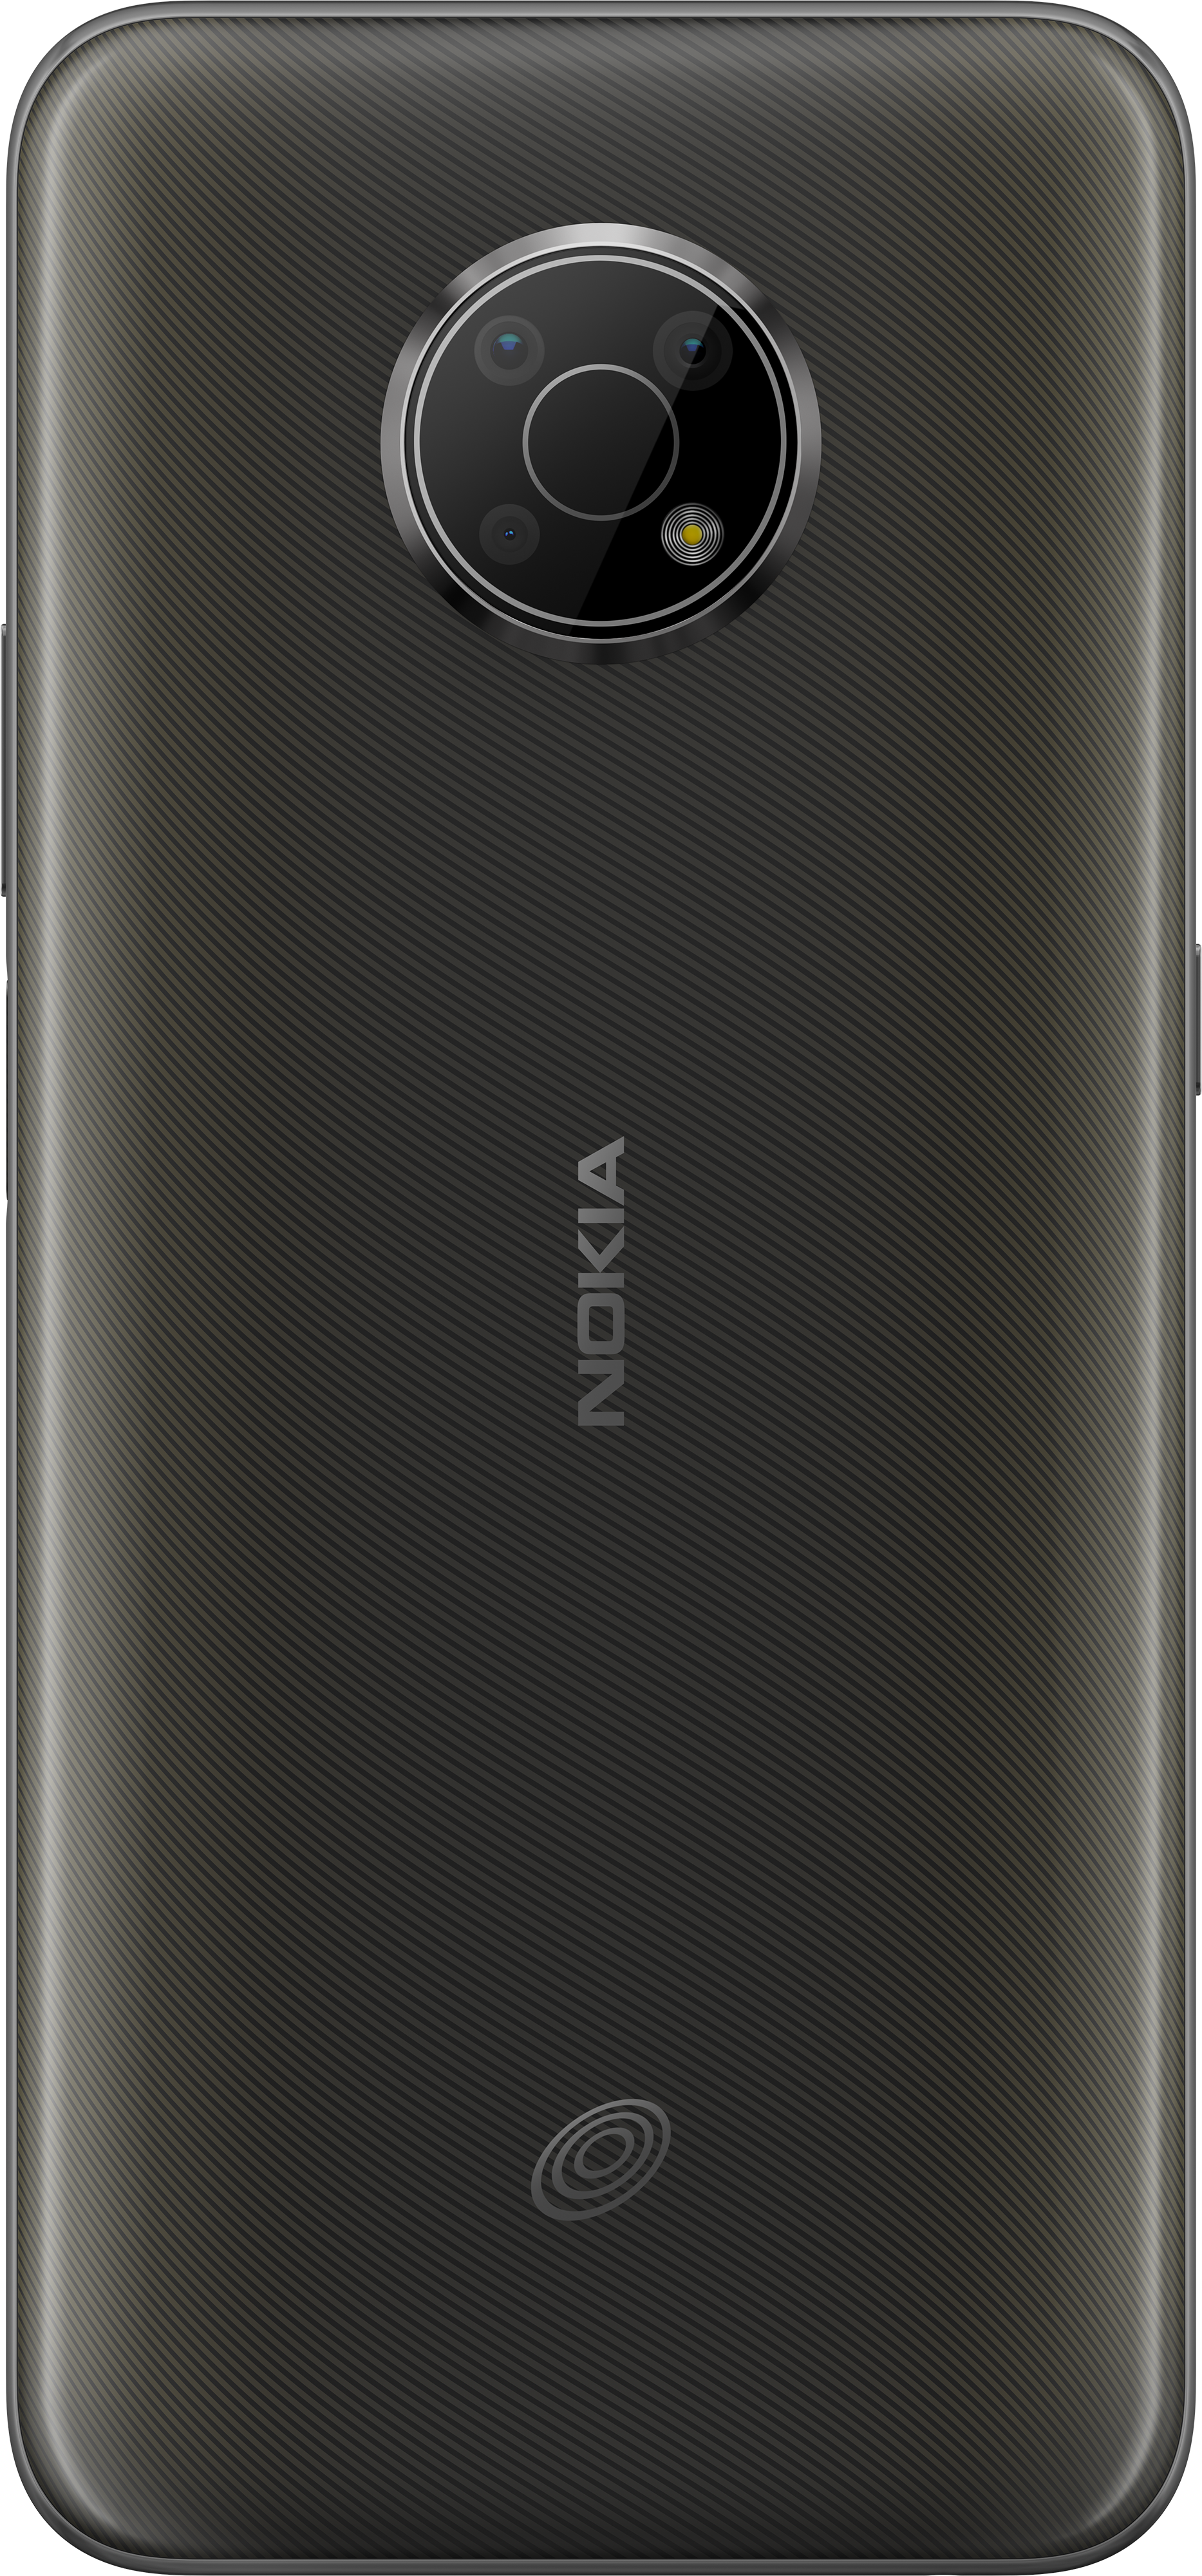 nokia biggest phone